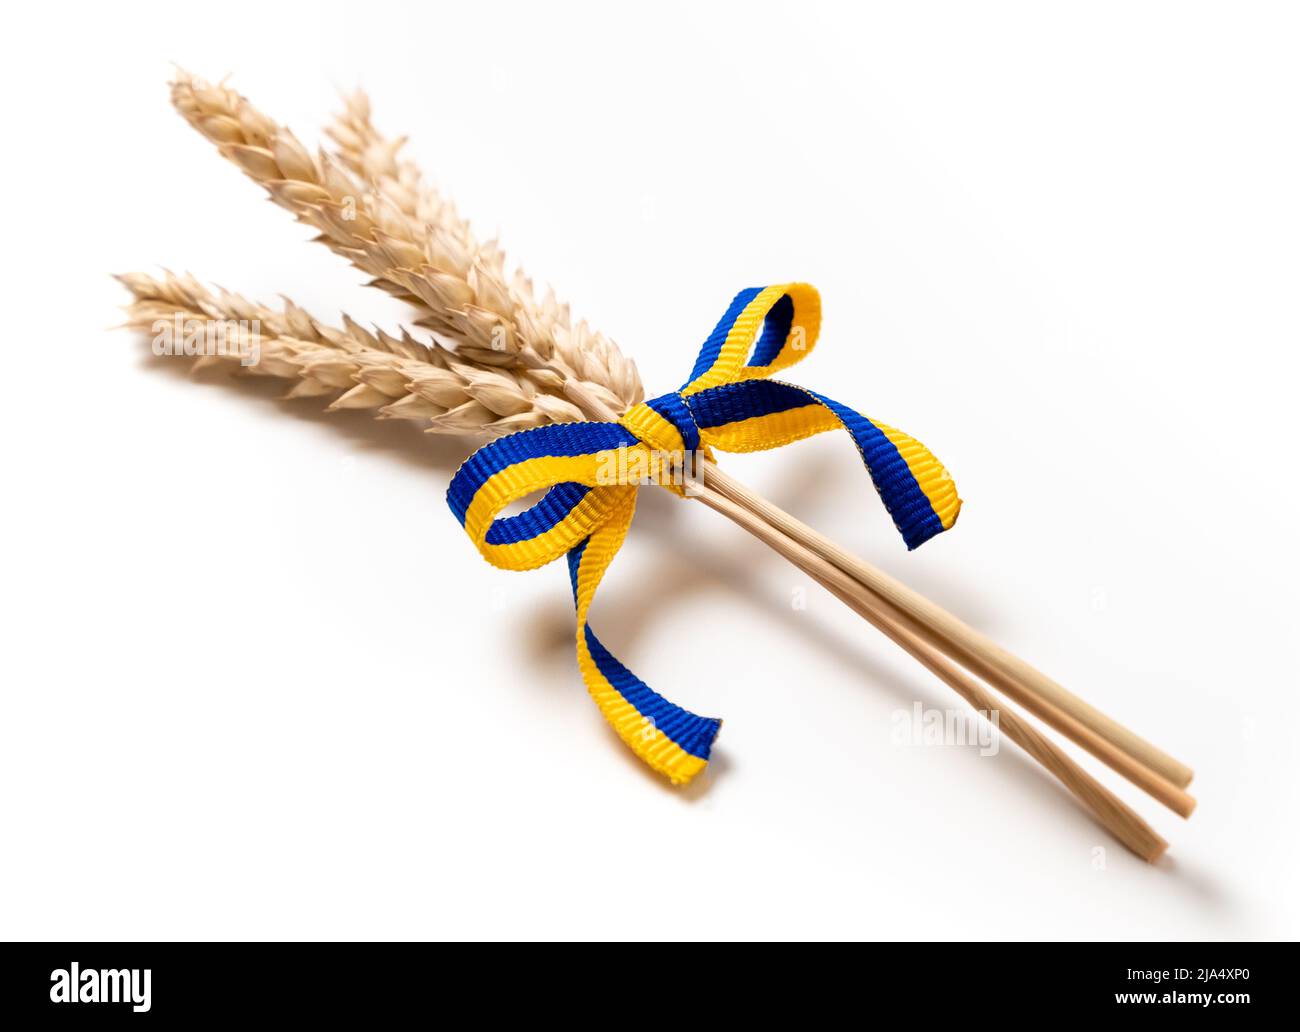 Weizenbündel mit gelbem und blauem Band in den Farben der ukrainischen Flagge isoliert auf weiß. Konzept der Nahrungsmittelversorgungskrise und der globalen Nahrungsmittelkrise Stockfoto